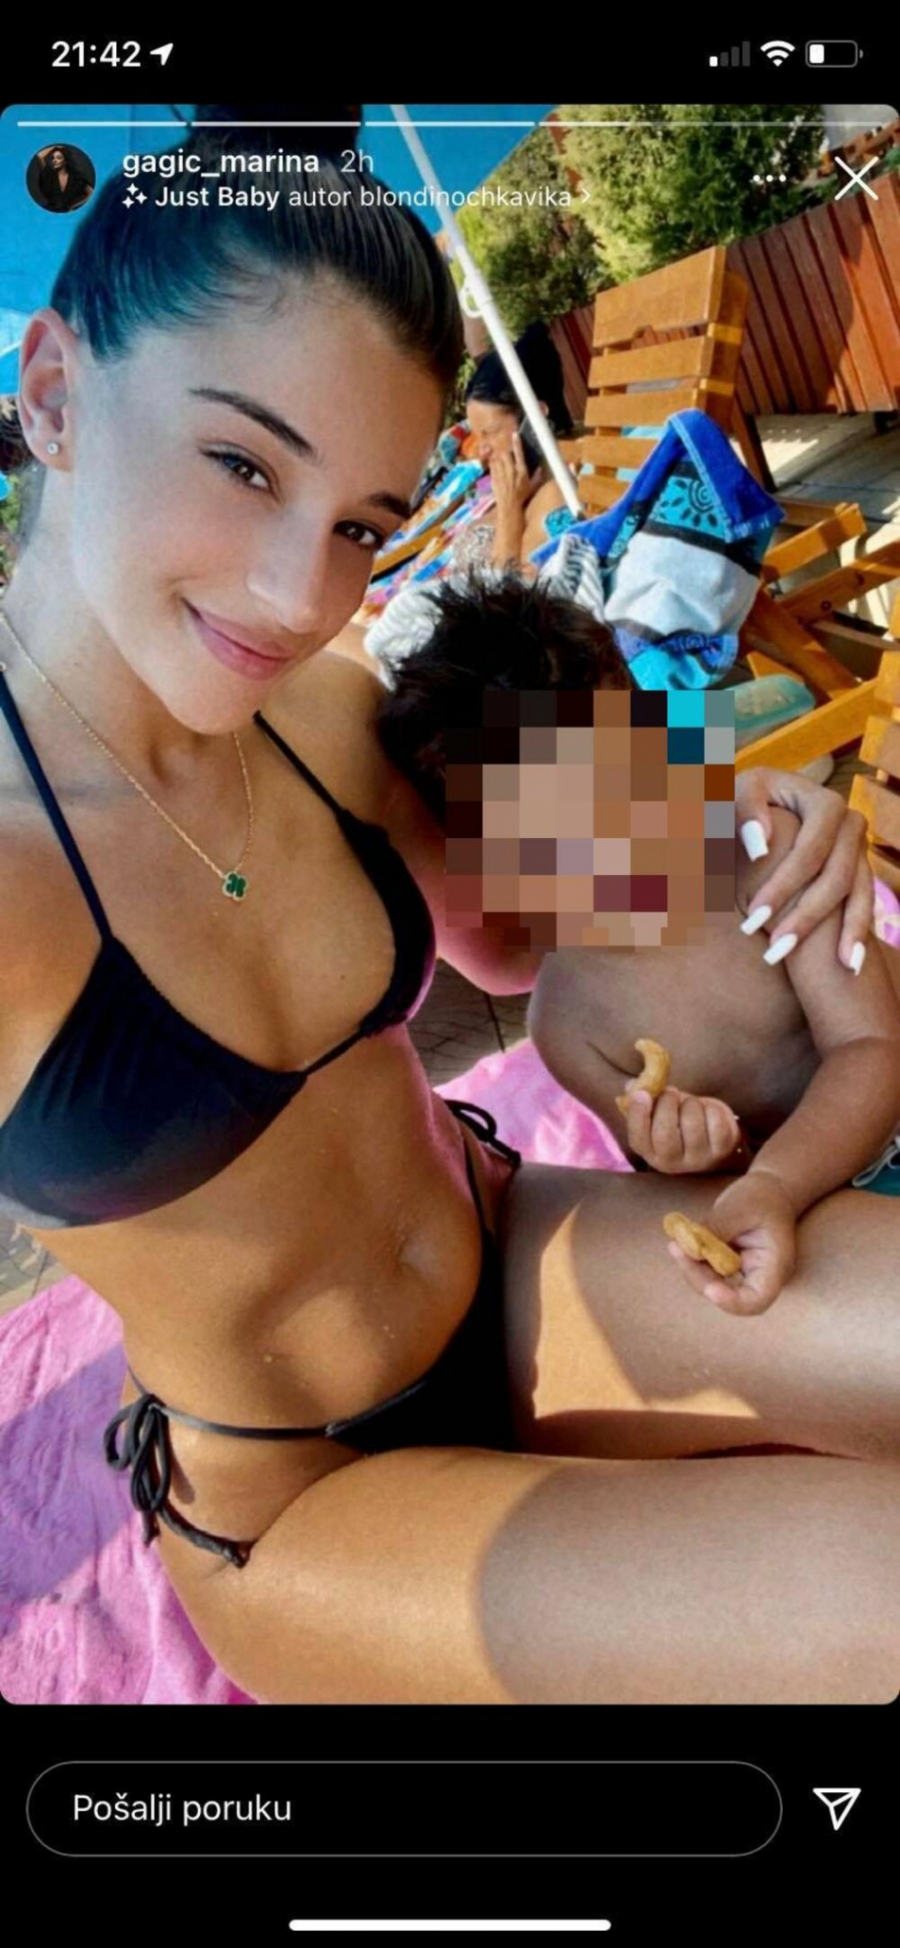 DOK DARKO UŽIVA SA BARBAROM! Marina objavila nikad provokativniju fotografiju, minijaturni bikini istakao obline, a svima je za oko zapao ovaj detalj! (FOTO)